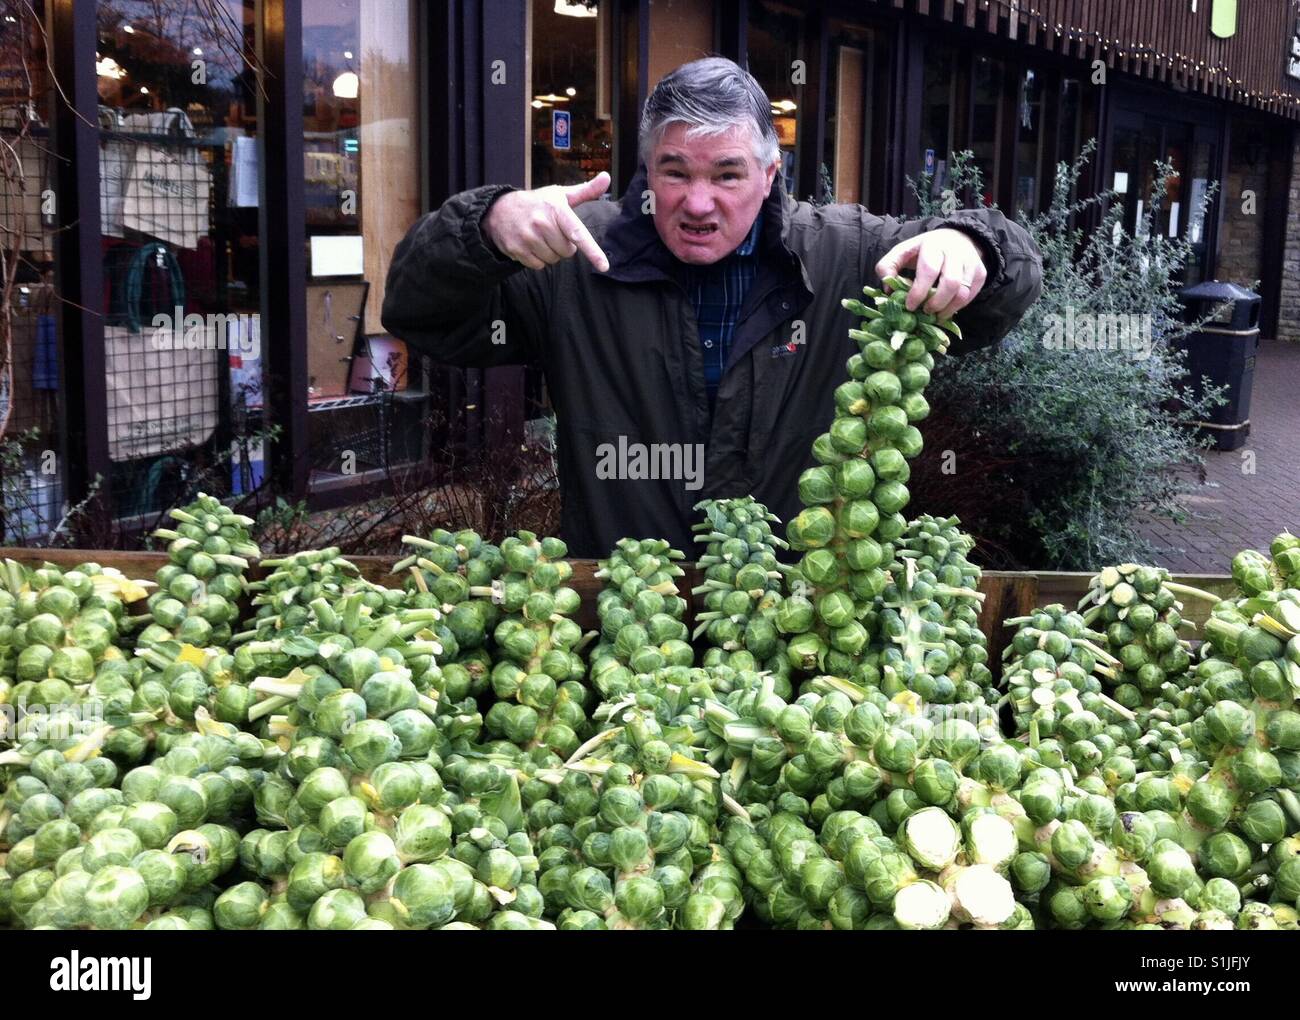 Un uomo esprime il suo disgusto per un display di cavolini di Bruxelles. Foto Stock